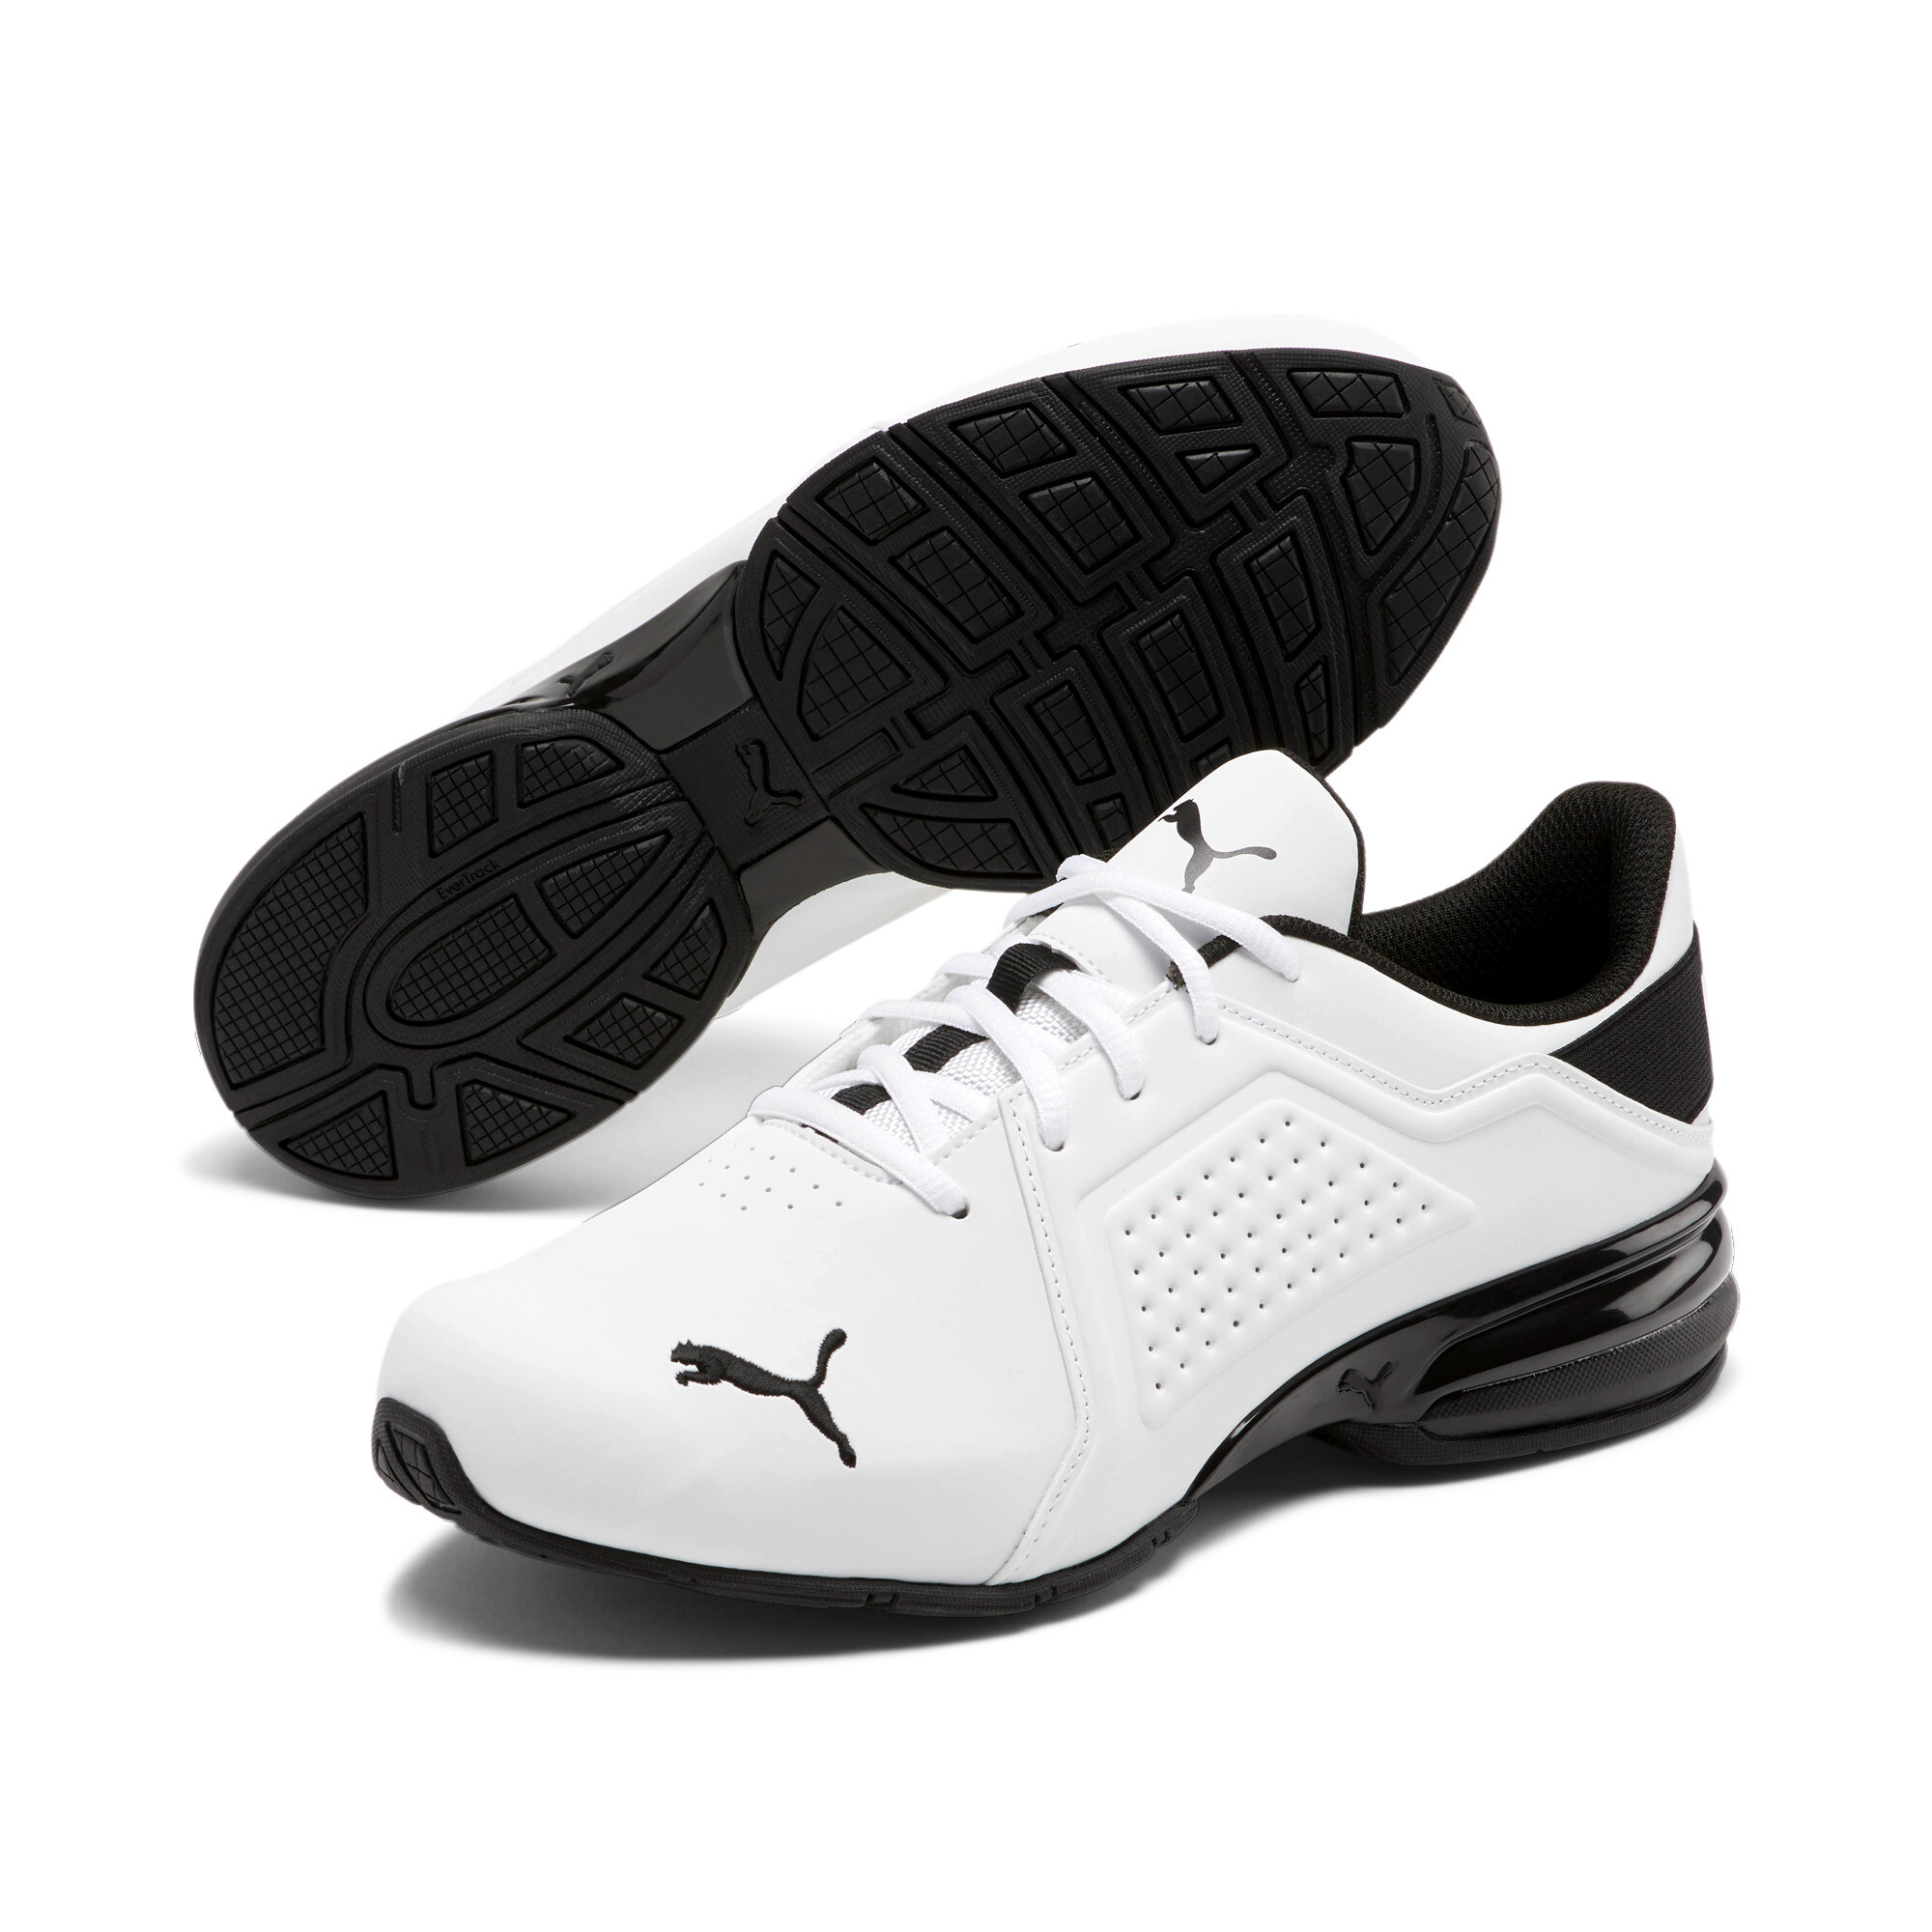 PUMA Men's Viz Runner Wide Shoes | eBay